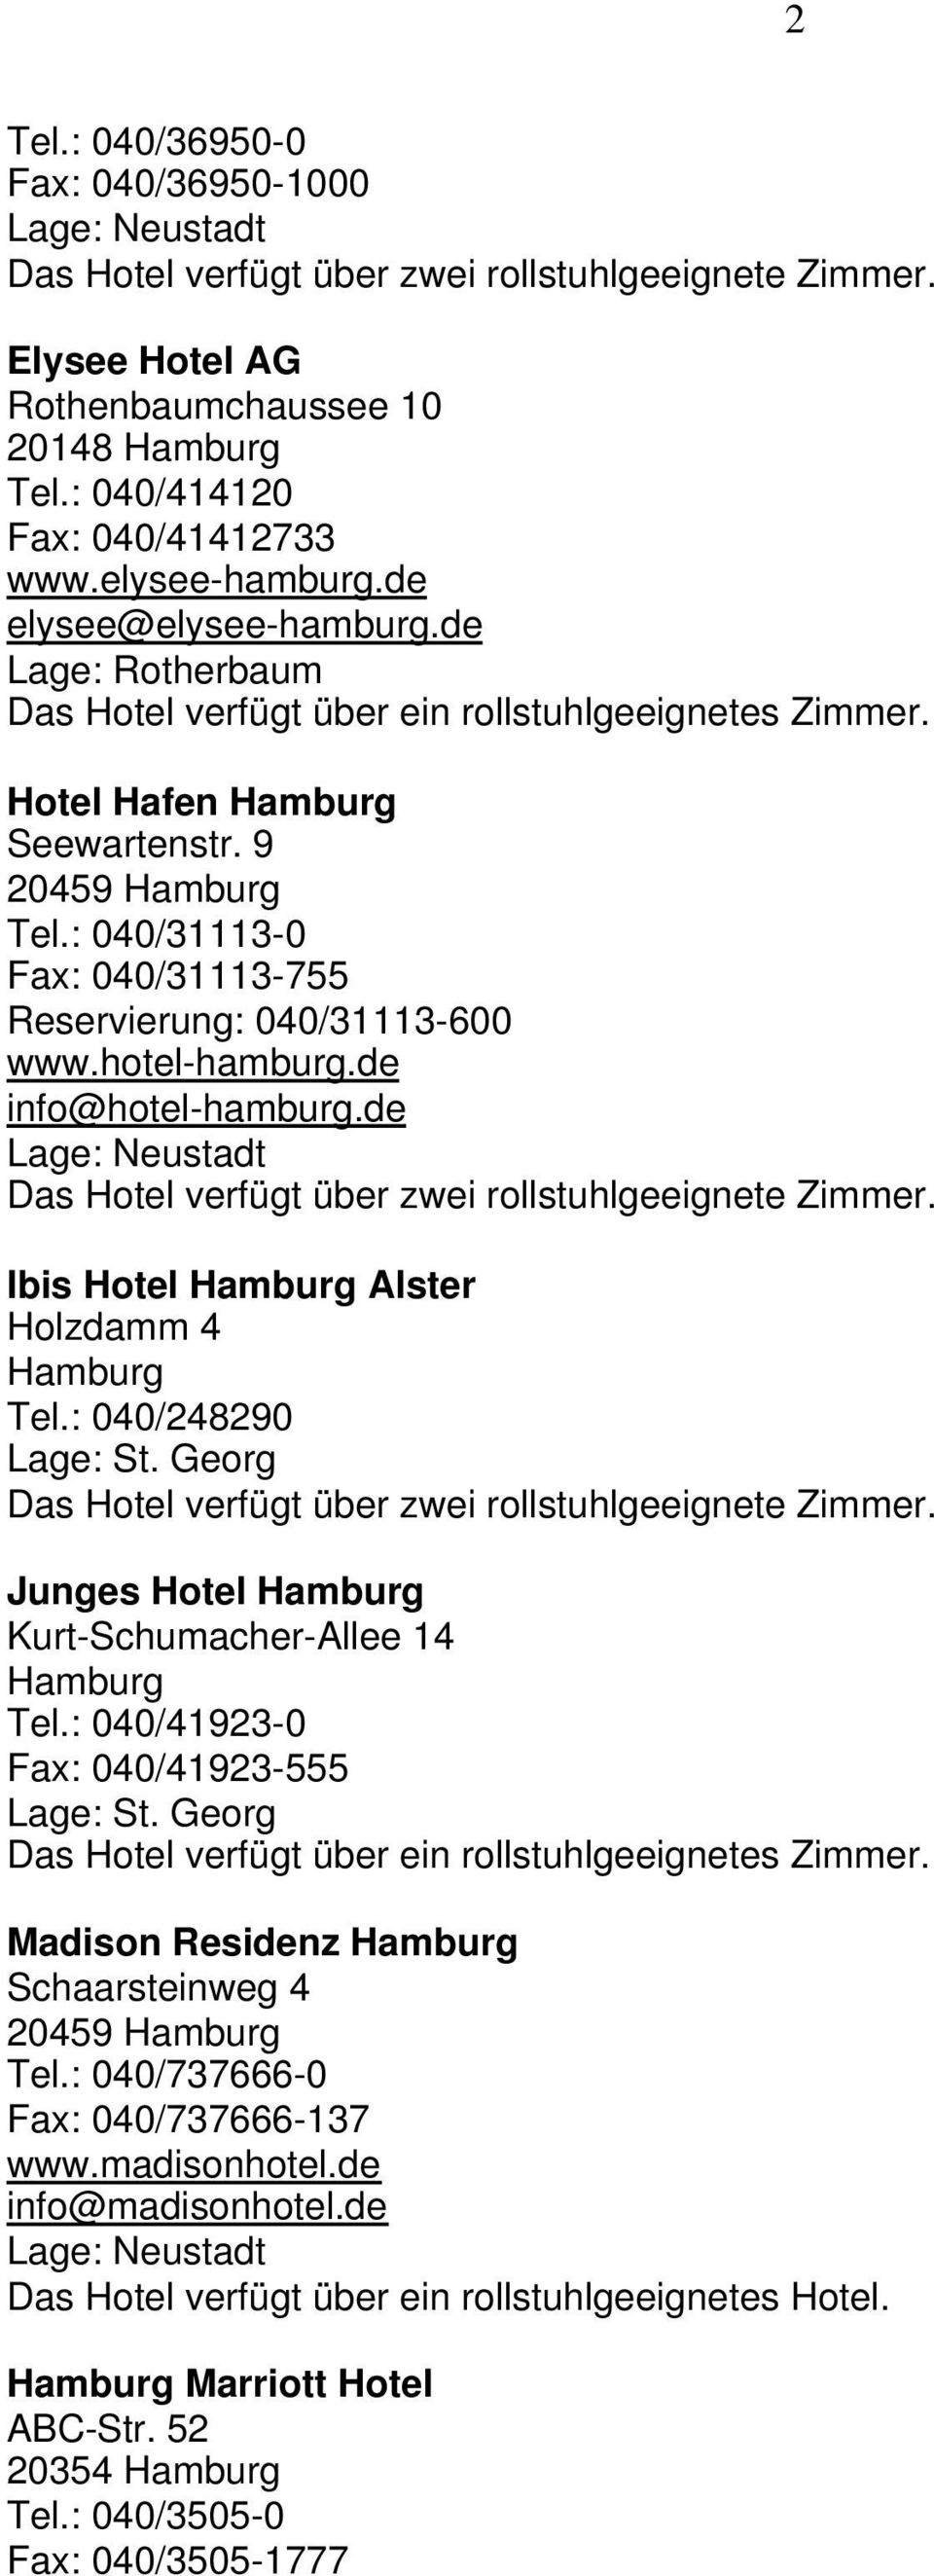 de Ibis Hotel Alster Holzdamm 4 Tel.: 040/248290 Lage: St. Georg Junges Hotel Kurt-Schumacher-Allee 14 Tel.: 040/41923-0 Fax: 040/41923-555 Lage: St.